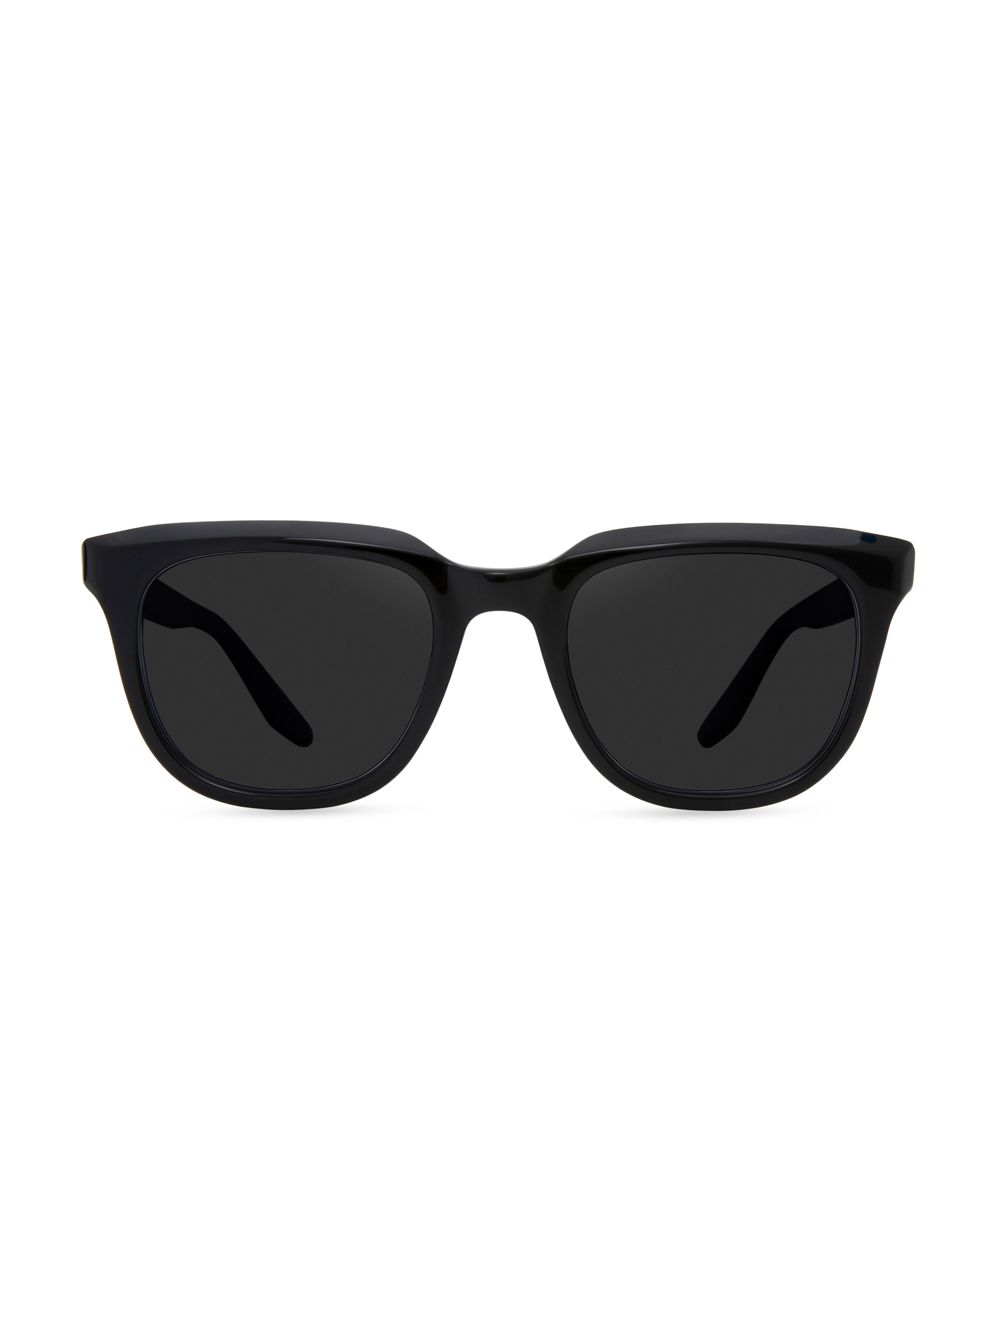 Прямоугольные солнцезащитные очки Bogle 50 мм Barton Perreira, черный солнцезащитные очки barton perreira x teddy vonranson 55mm barton perreira